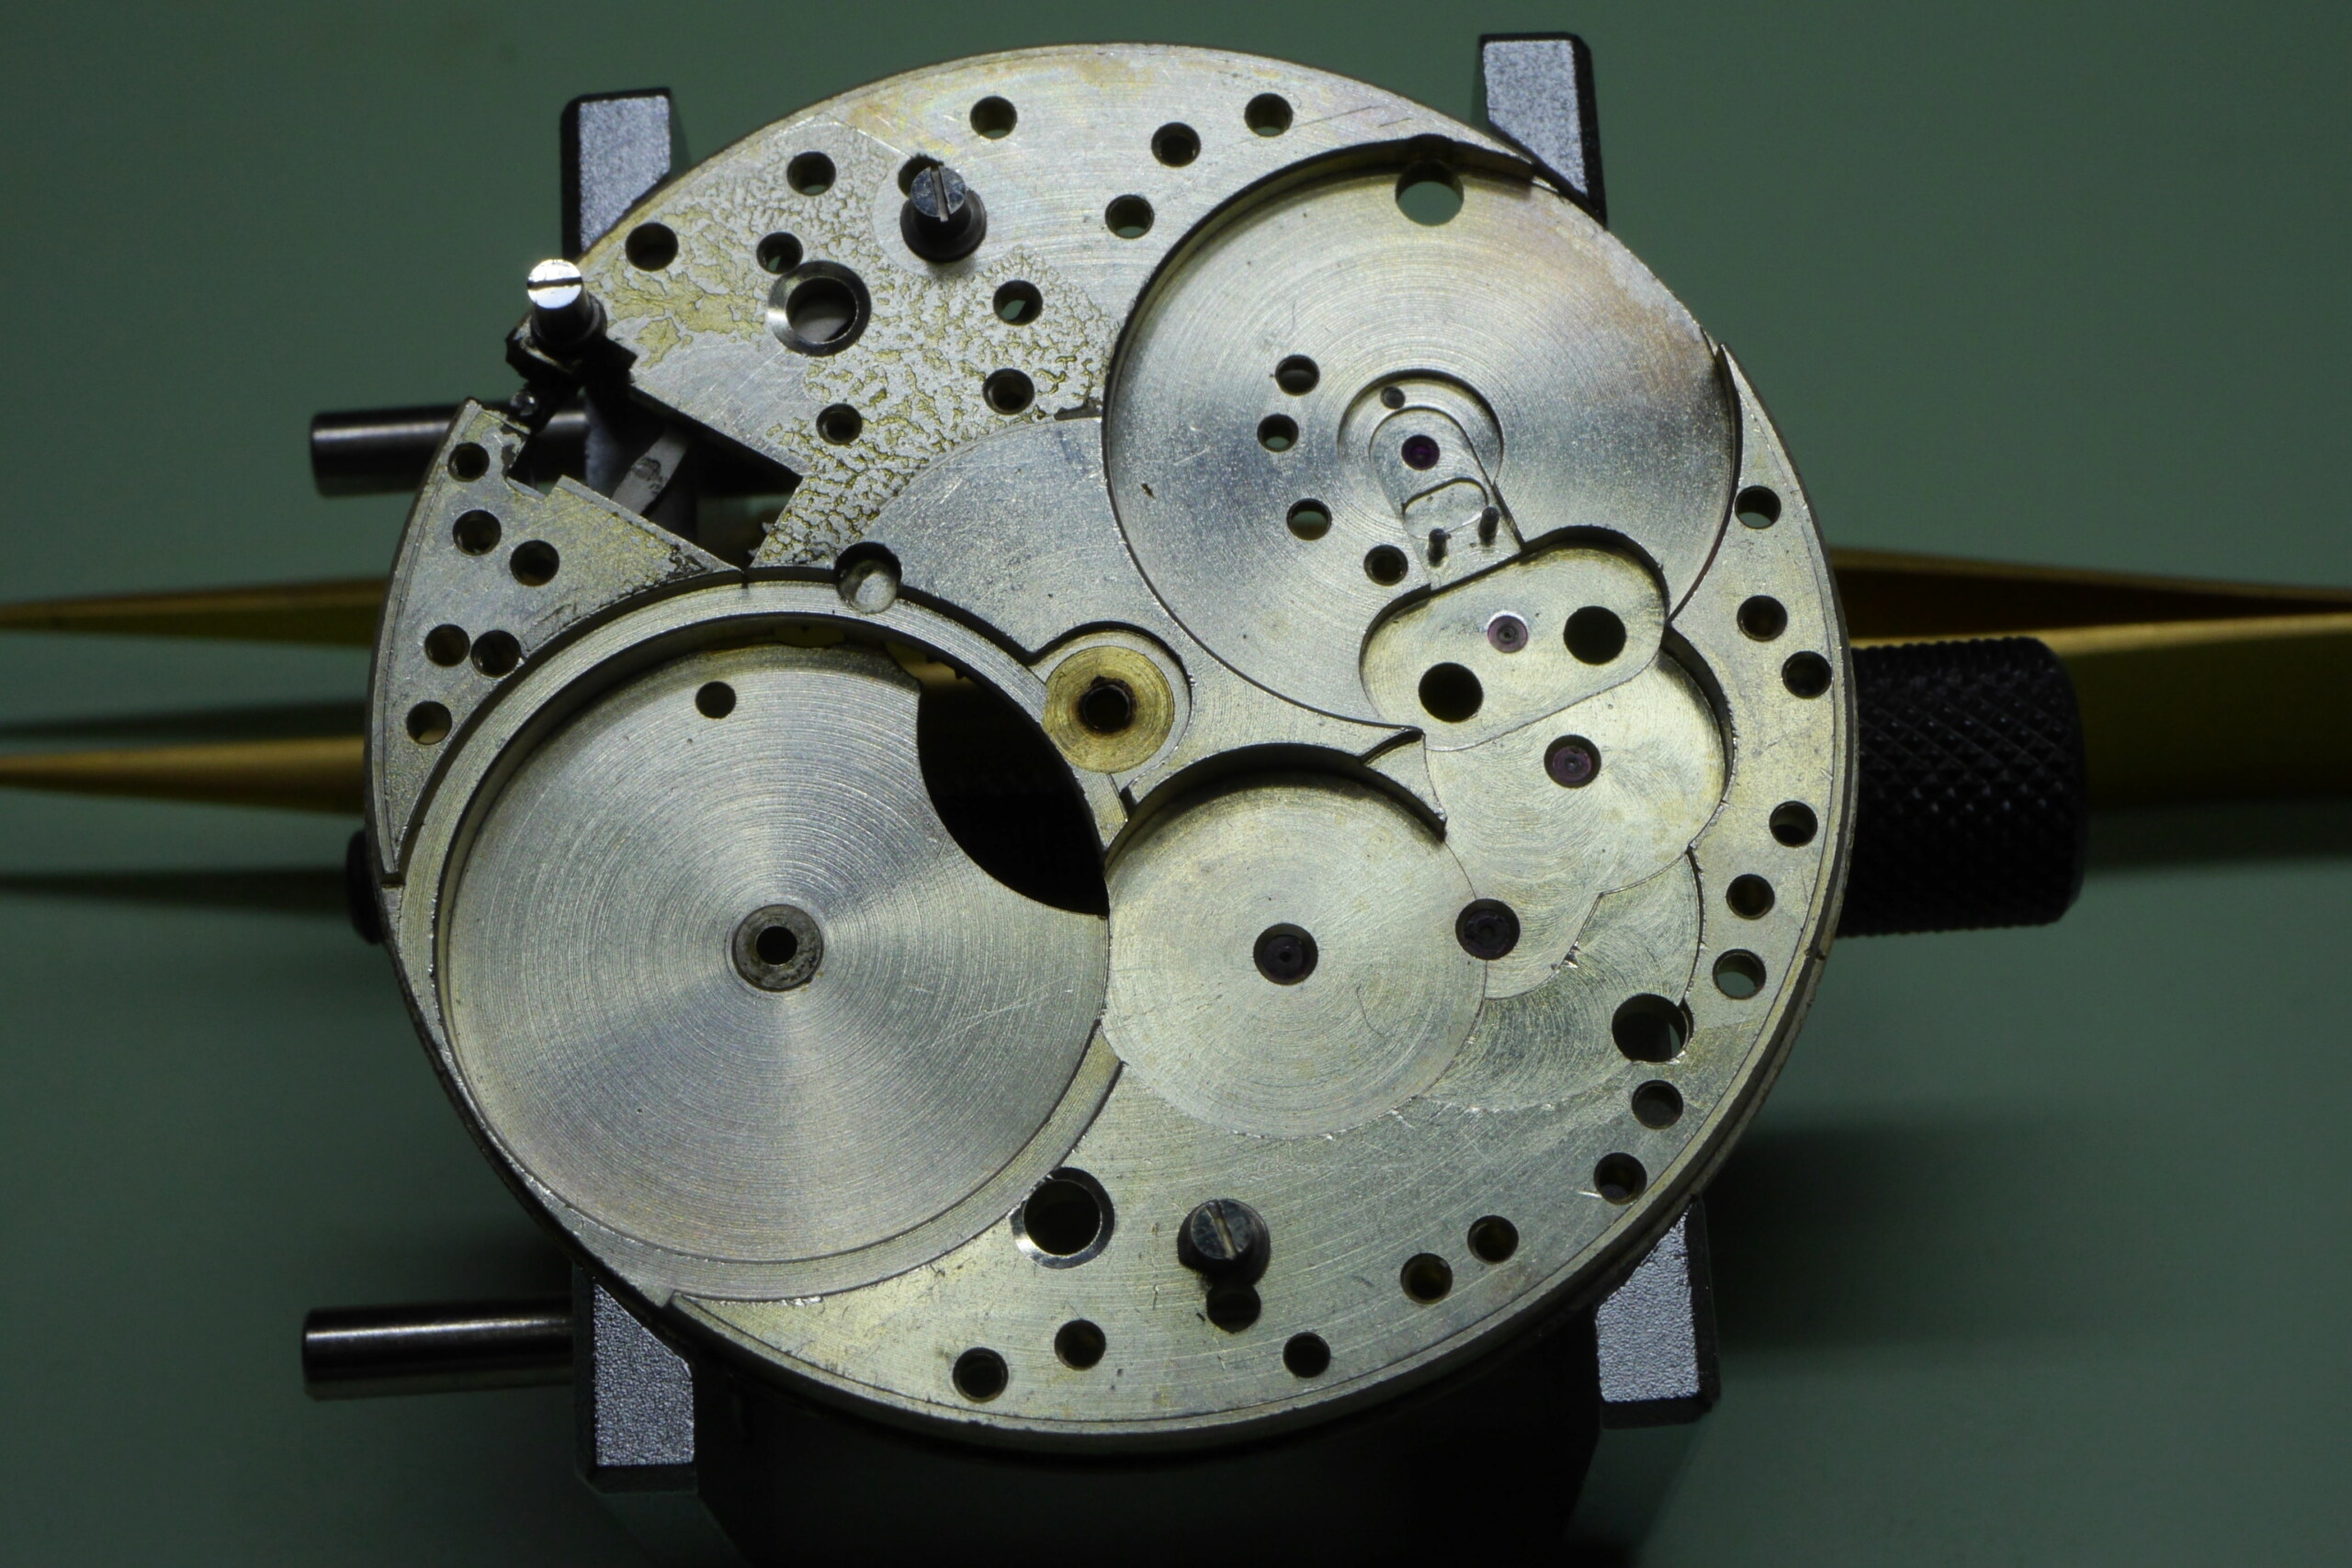 Réparation et entretien d'une montre de poche S.F.L (société française longines) 5310